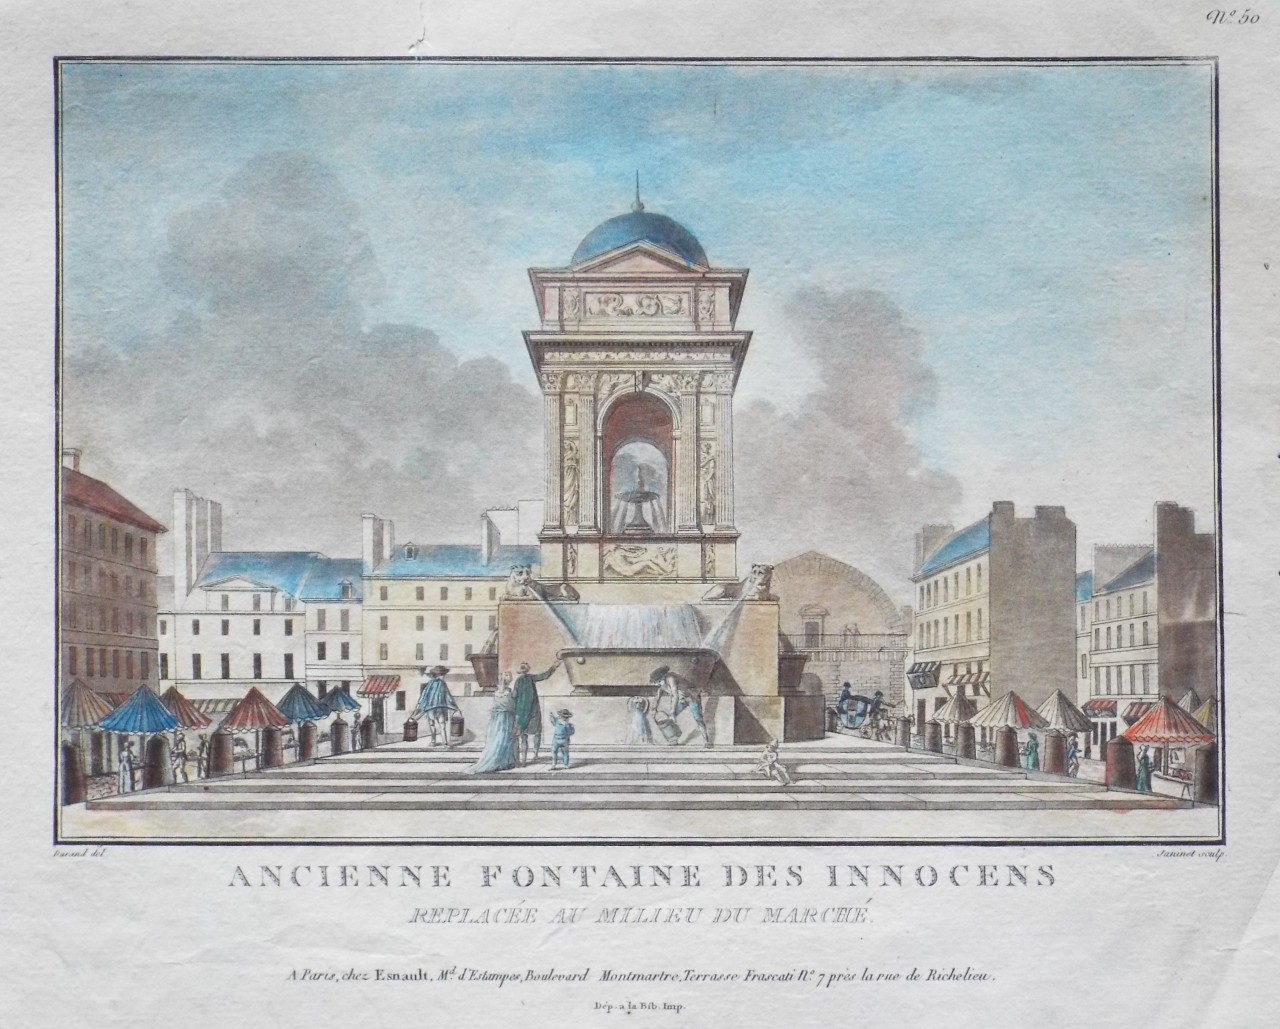 Print - Ancienne Fontaine des Innocens Replace au Millieu du Marche. - 